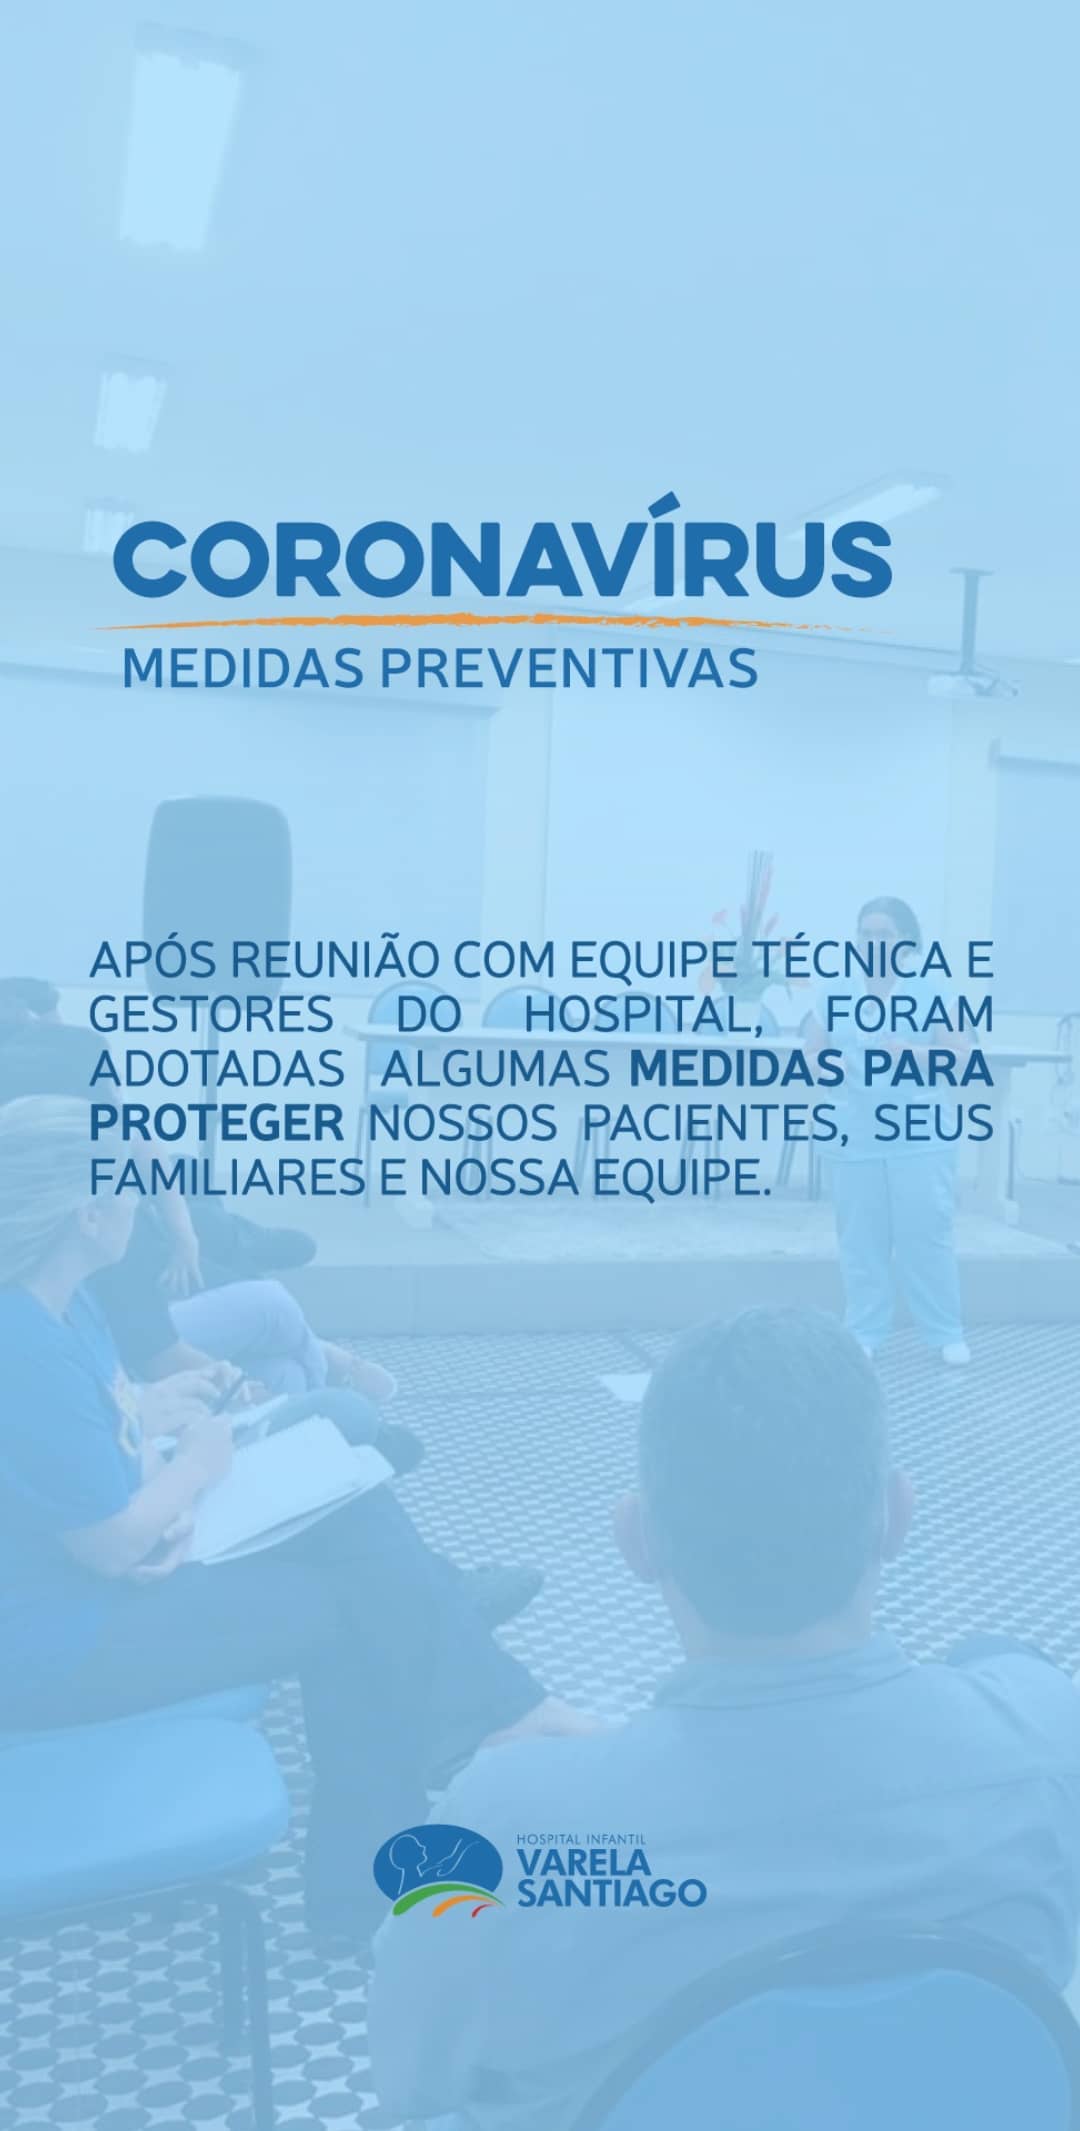 Medidas protetivas e preventivas contra o novo coronavírus (COVID-19)